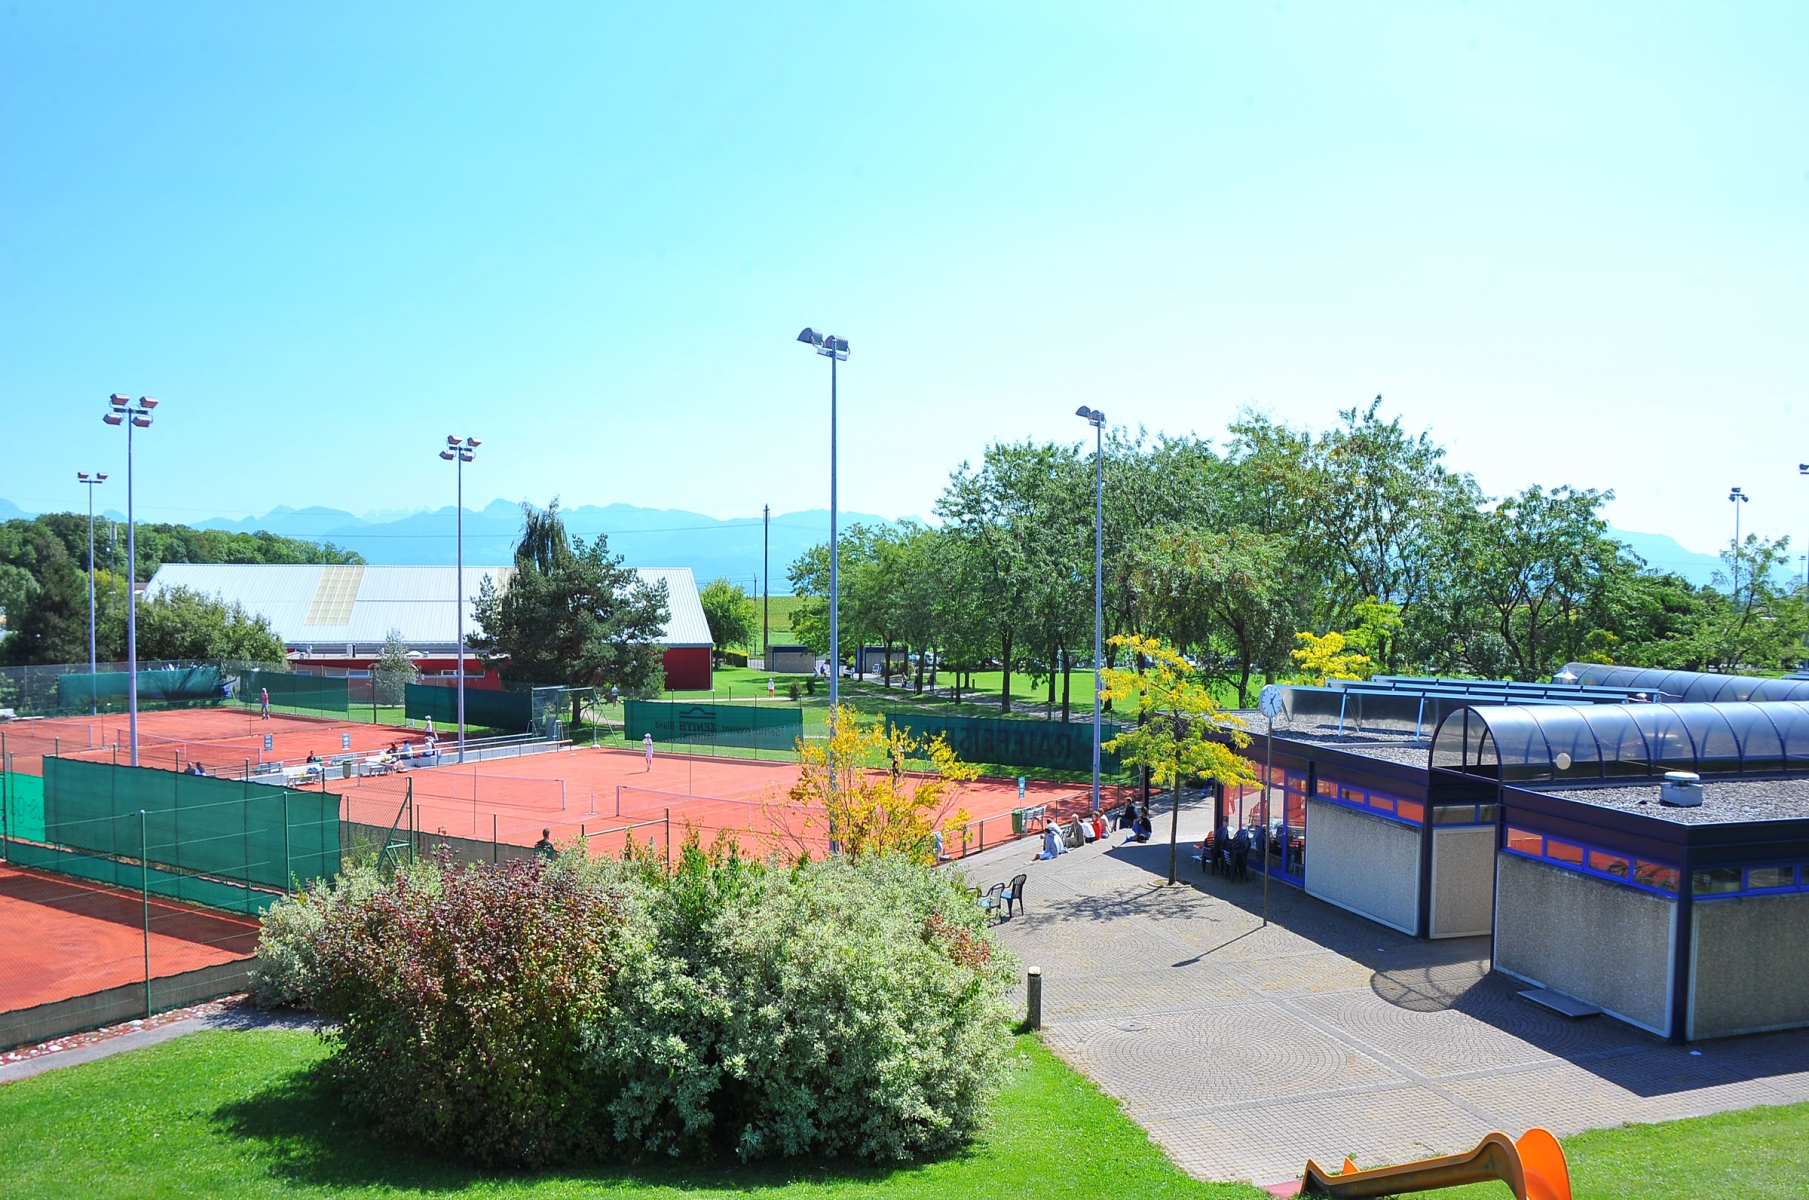 Le centre sportif compte actuellement cinq terrains de foot dont deux synthétiques.